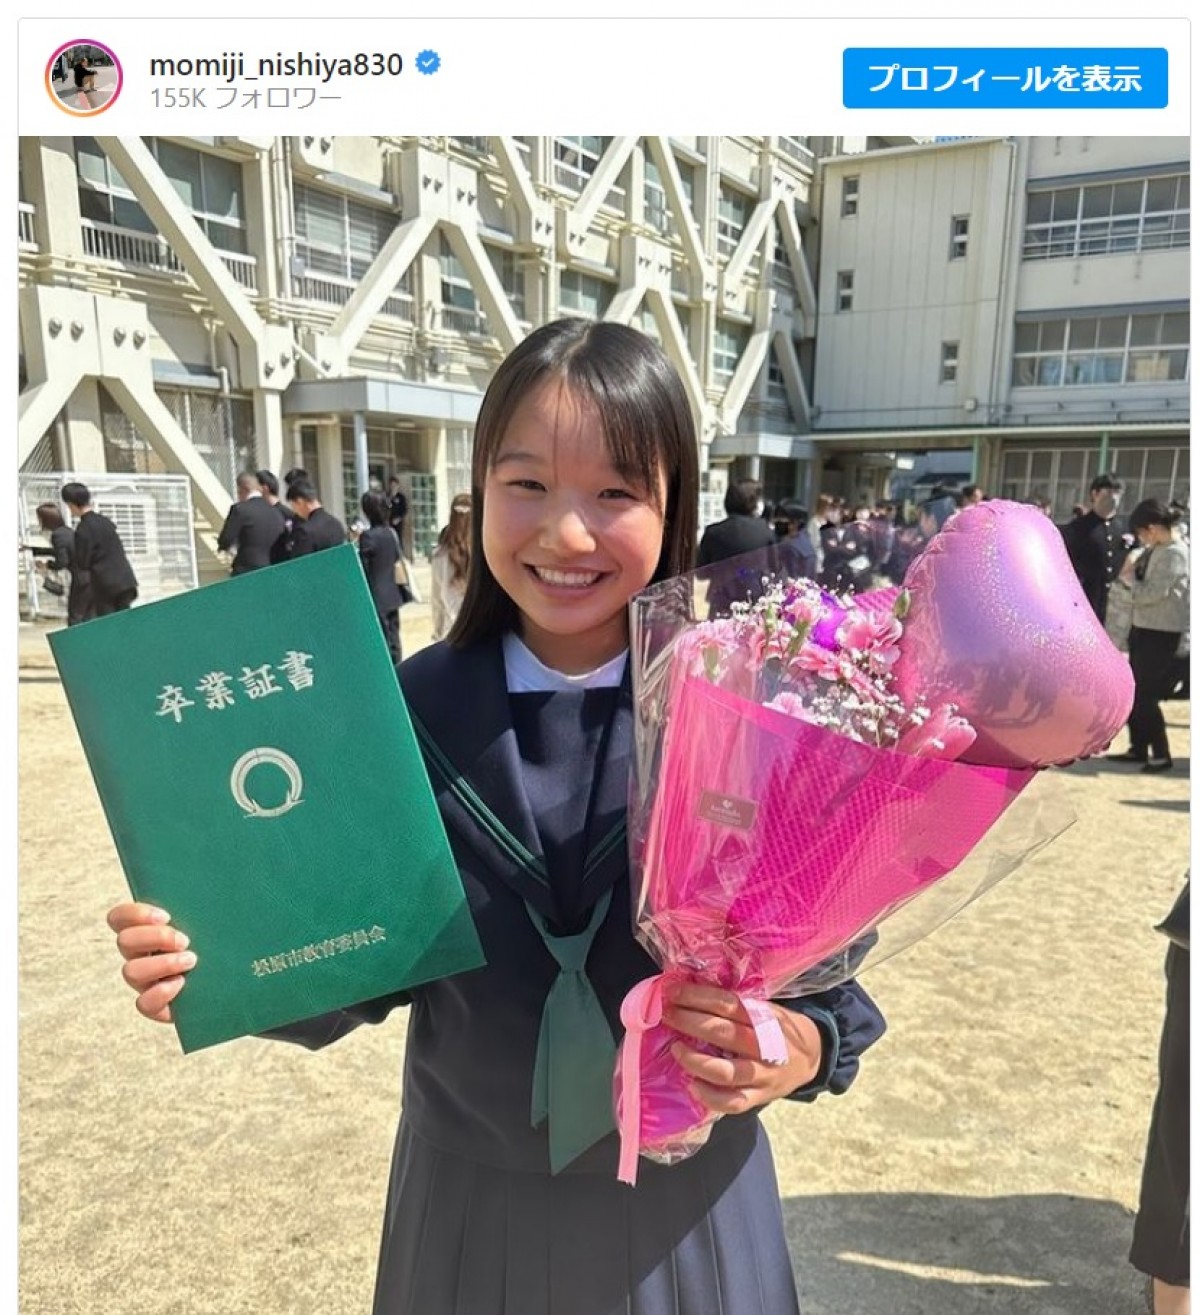 15歳スケボー金メダリスト・西矢椛、中学校卒業を報告「制服が新鮮で可愛い」「高校で待ってんで」